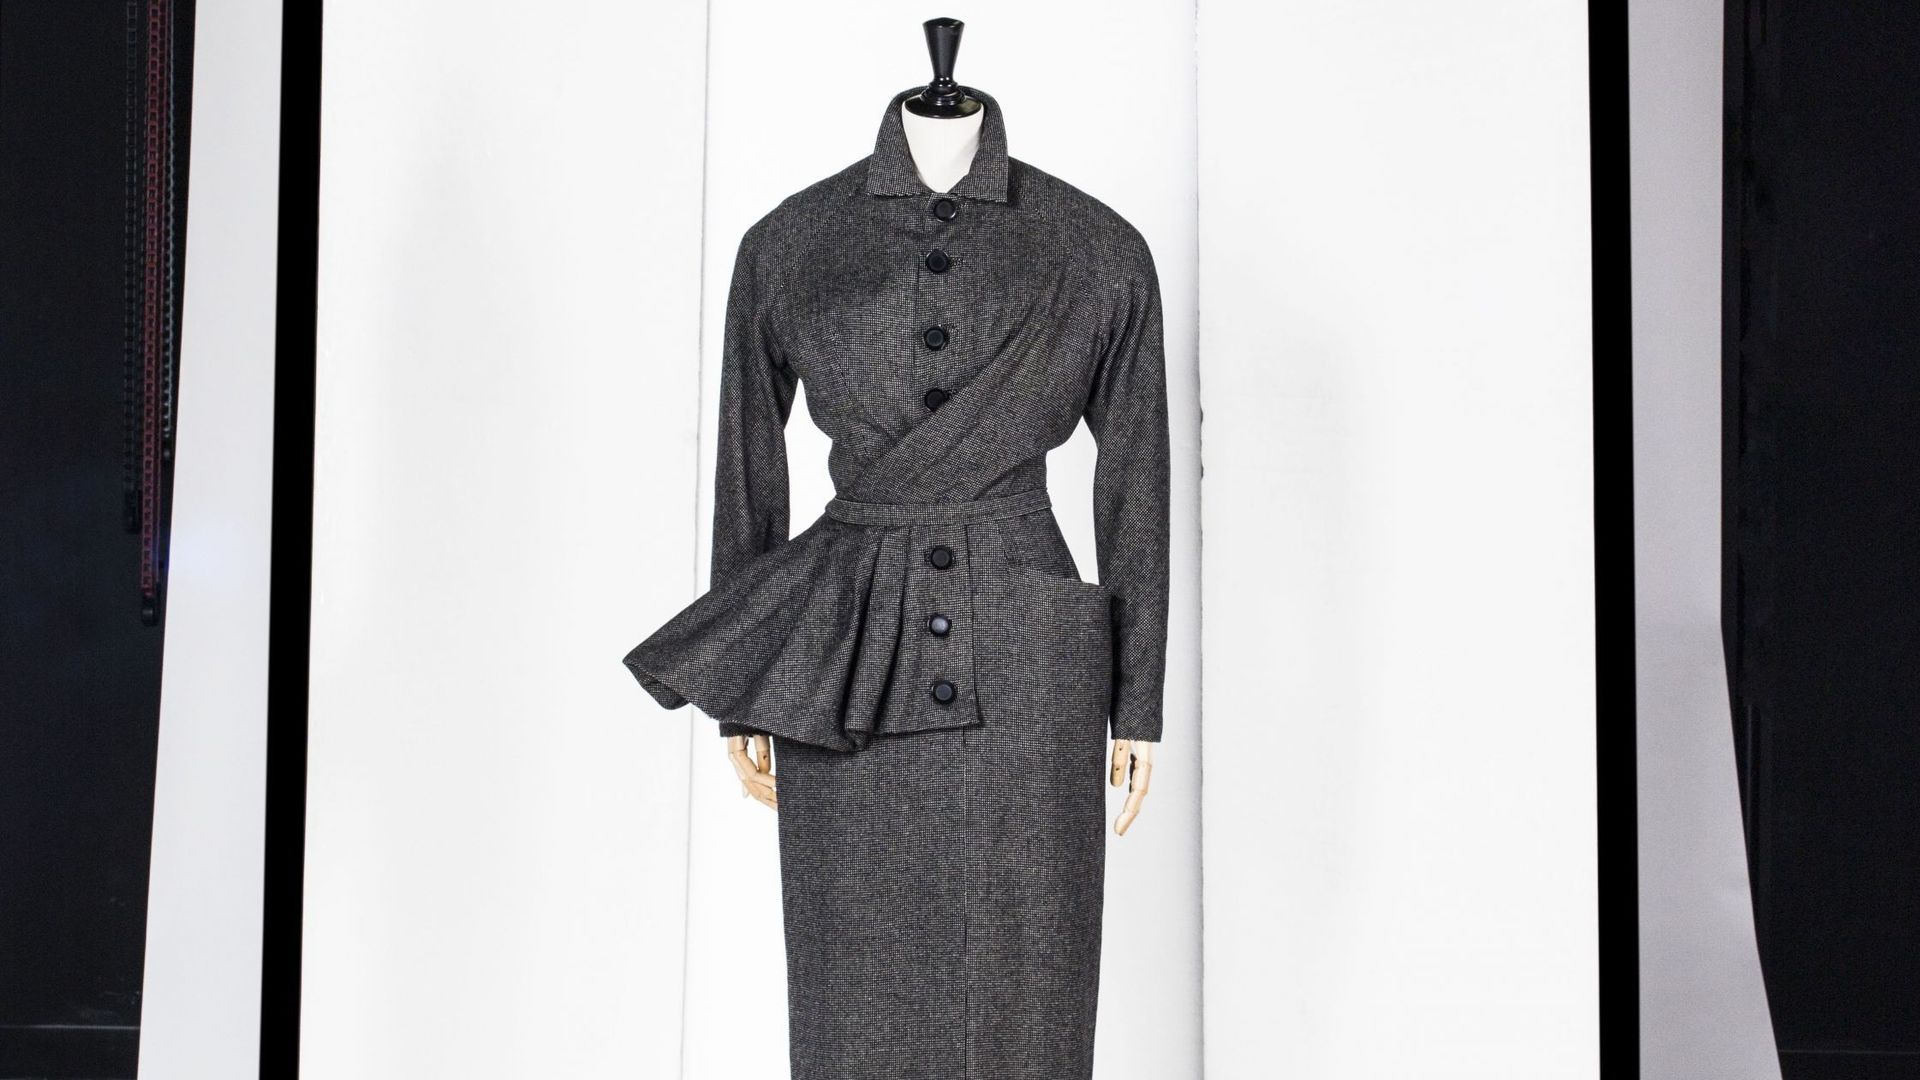 Christian Dior, ensemble de jour "Bernique" (robe et veste), A/H 1950 Toile de laine